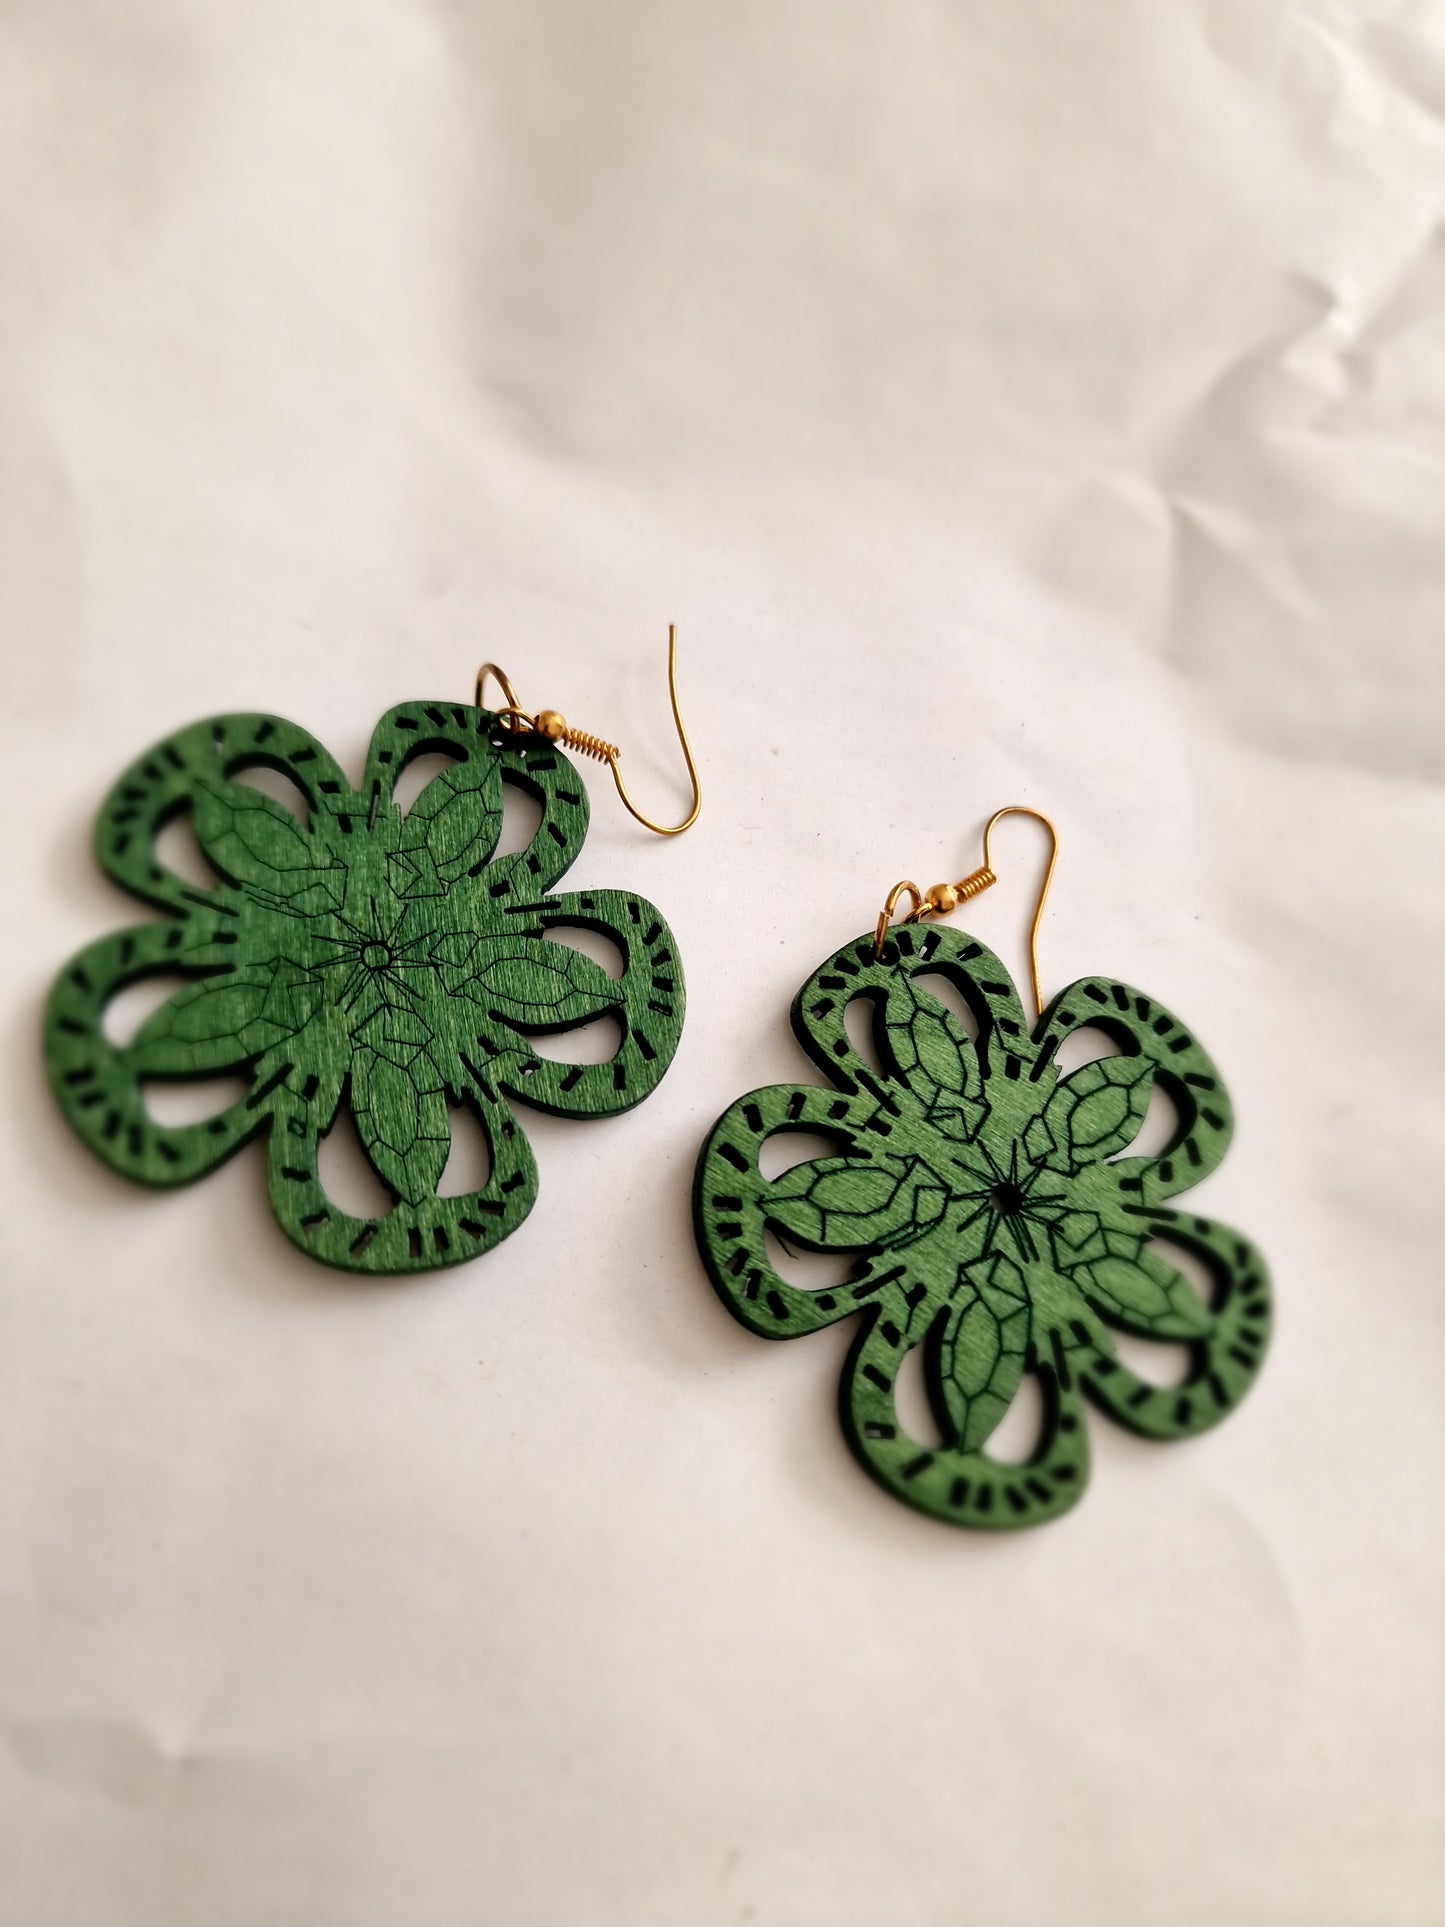 Green flower shaped wooden earrings